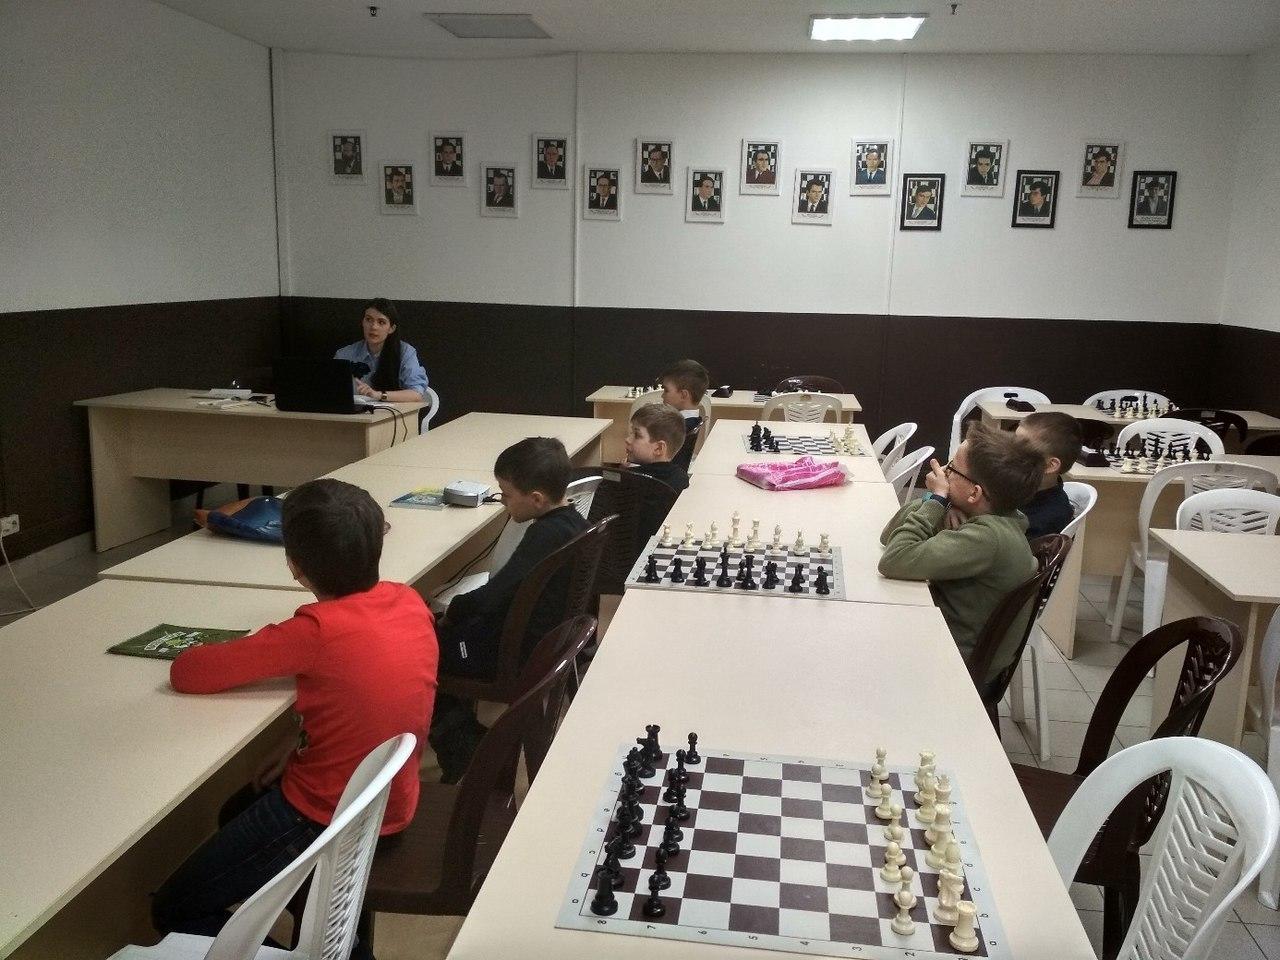 Анонсируем ближайшие шахматные события в нашем шахматном клубе «Фианкетто»